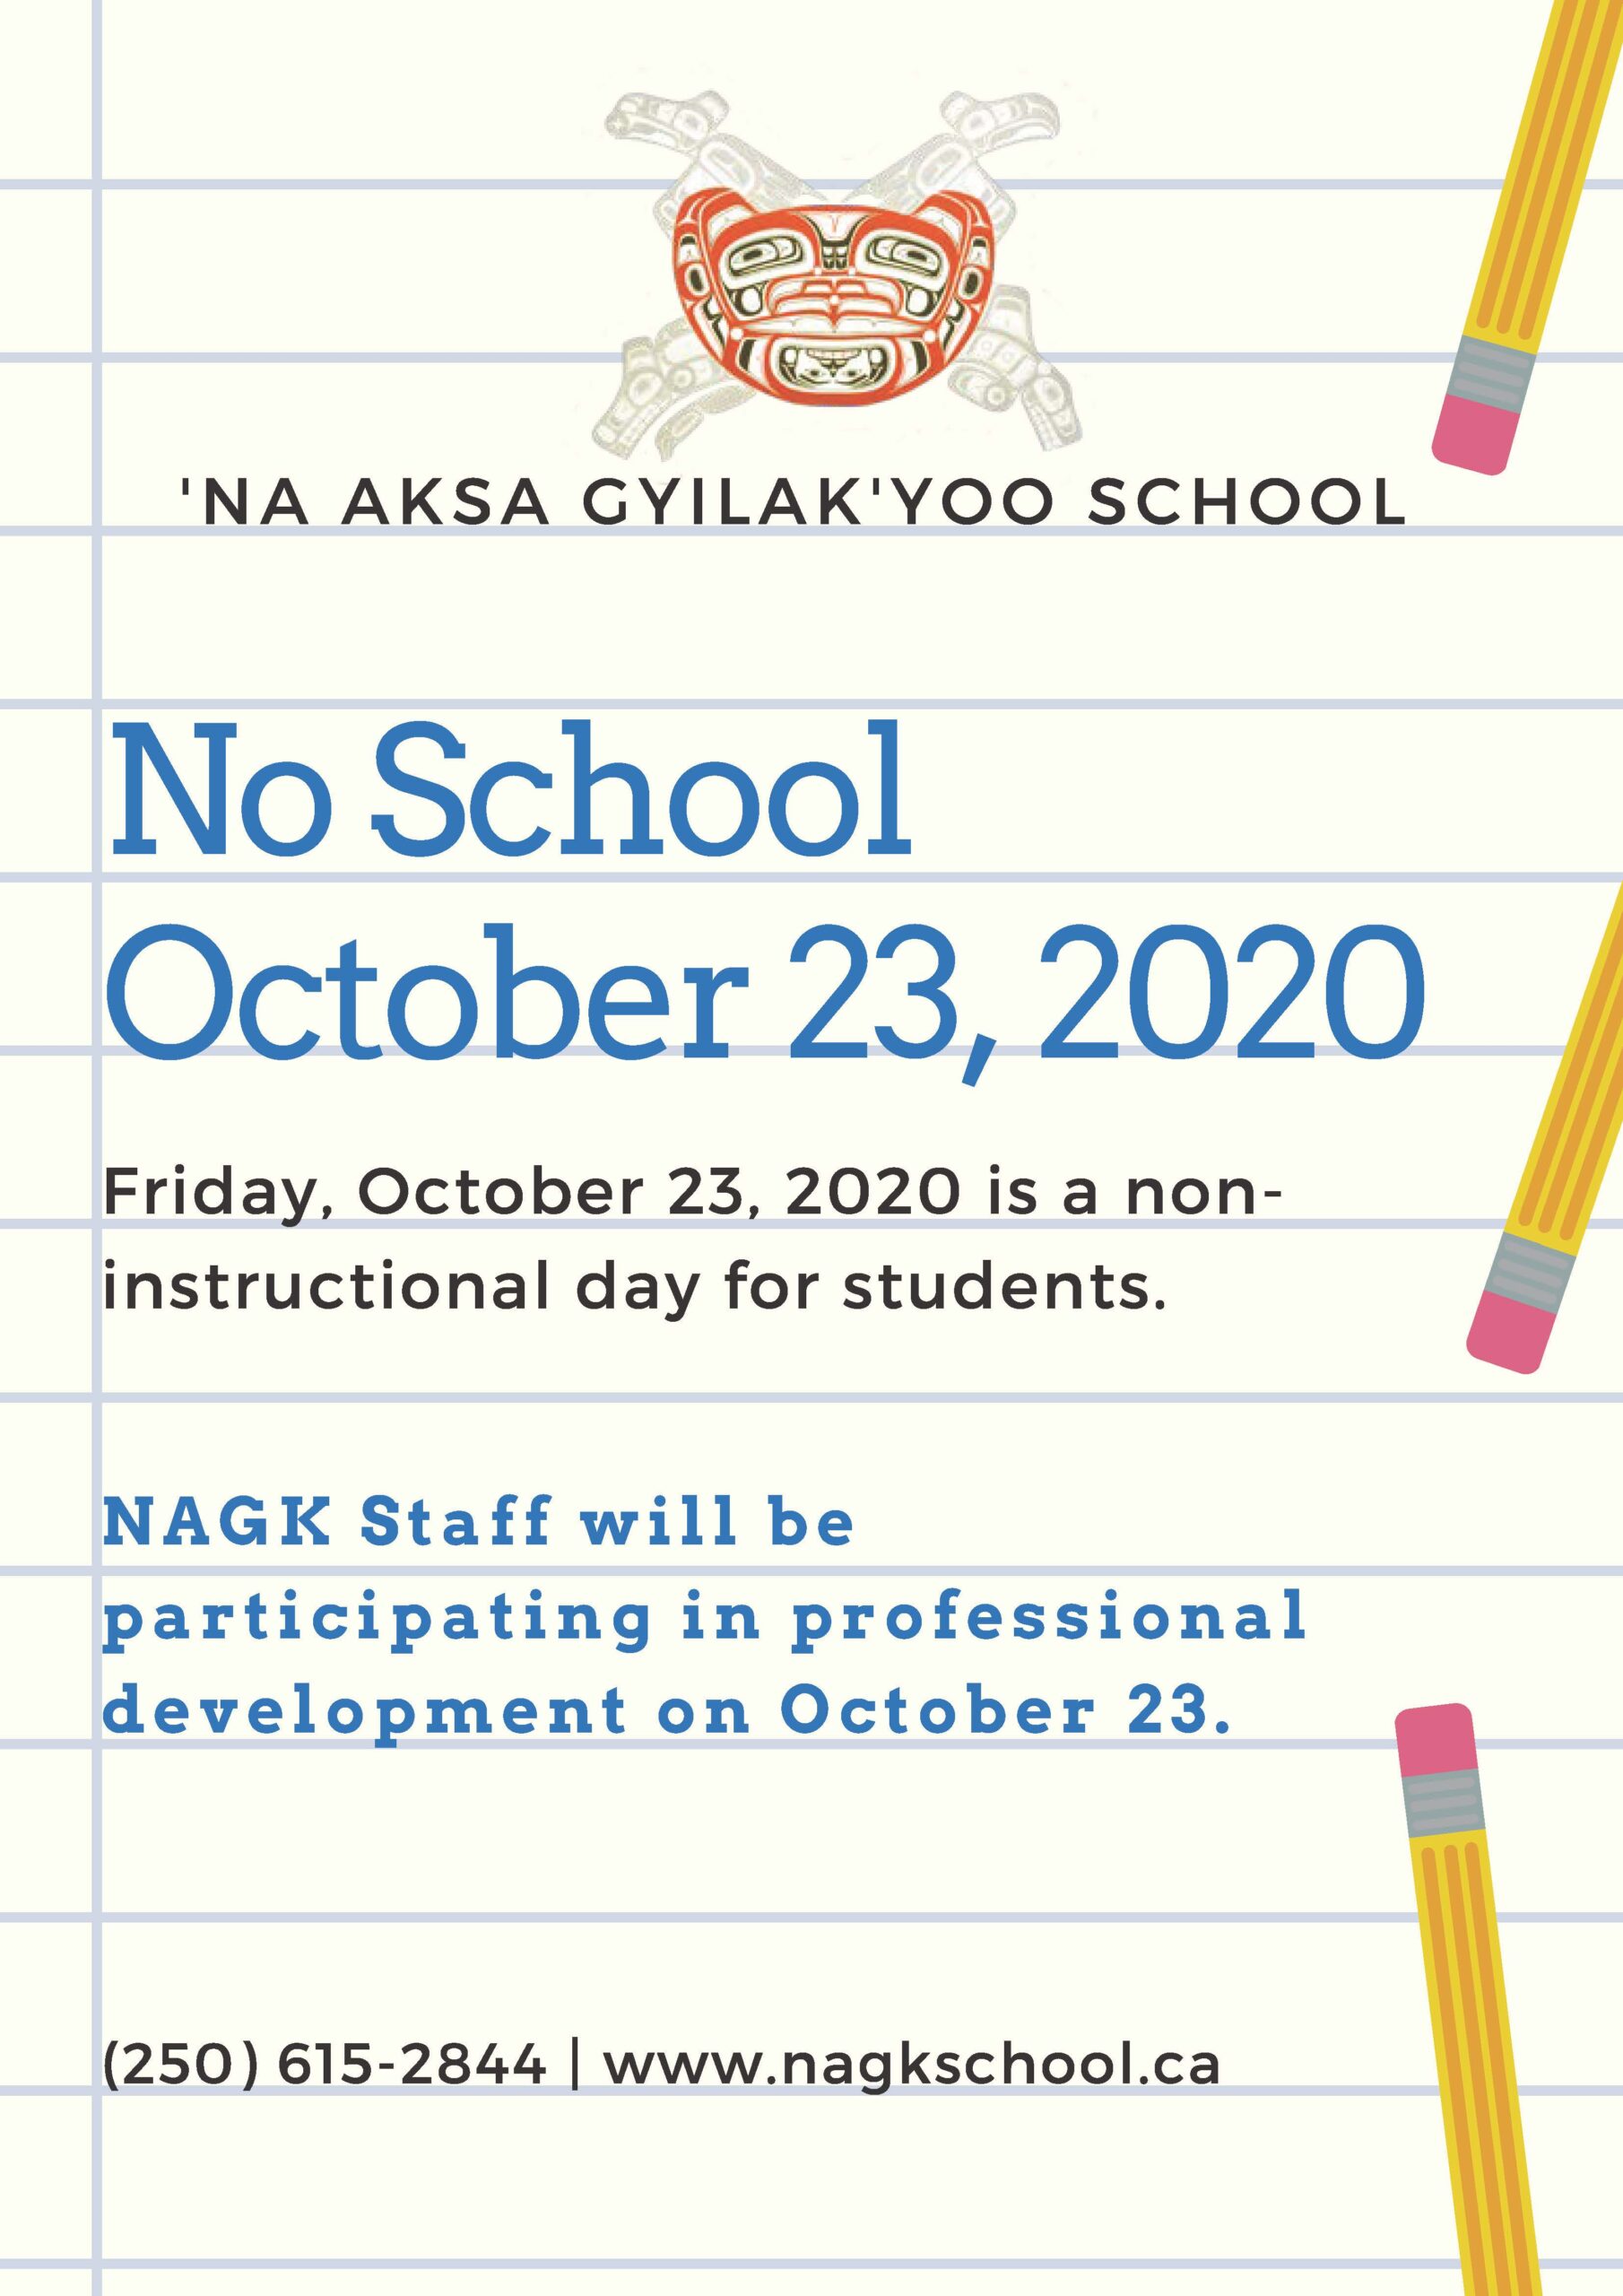 No School October 22, 2020